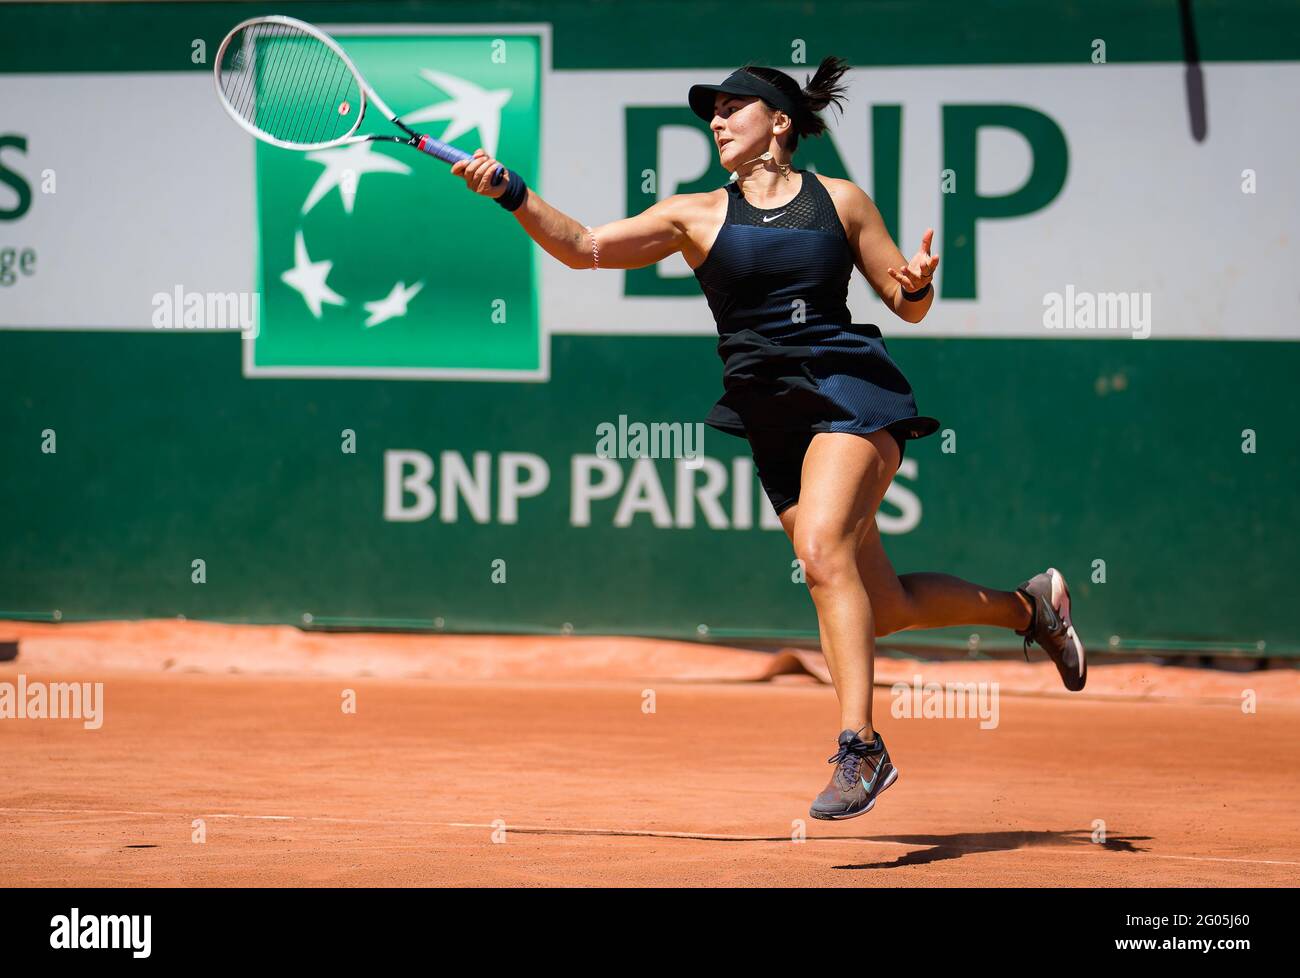 Bianca Andreescu du Canada lors de la première partie du tournoi de tennis  Roland-Garros 2021, Grand Chelem, le 31 mai 2021 au stade Roland-Garros à  Paris, France - photo Rob Prange /